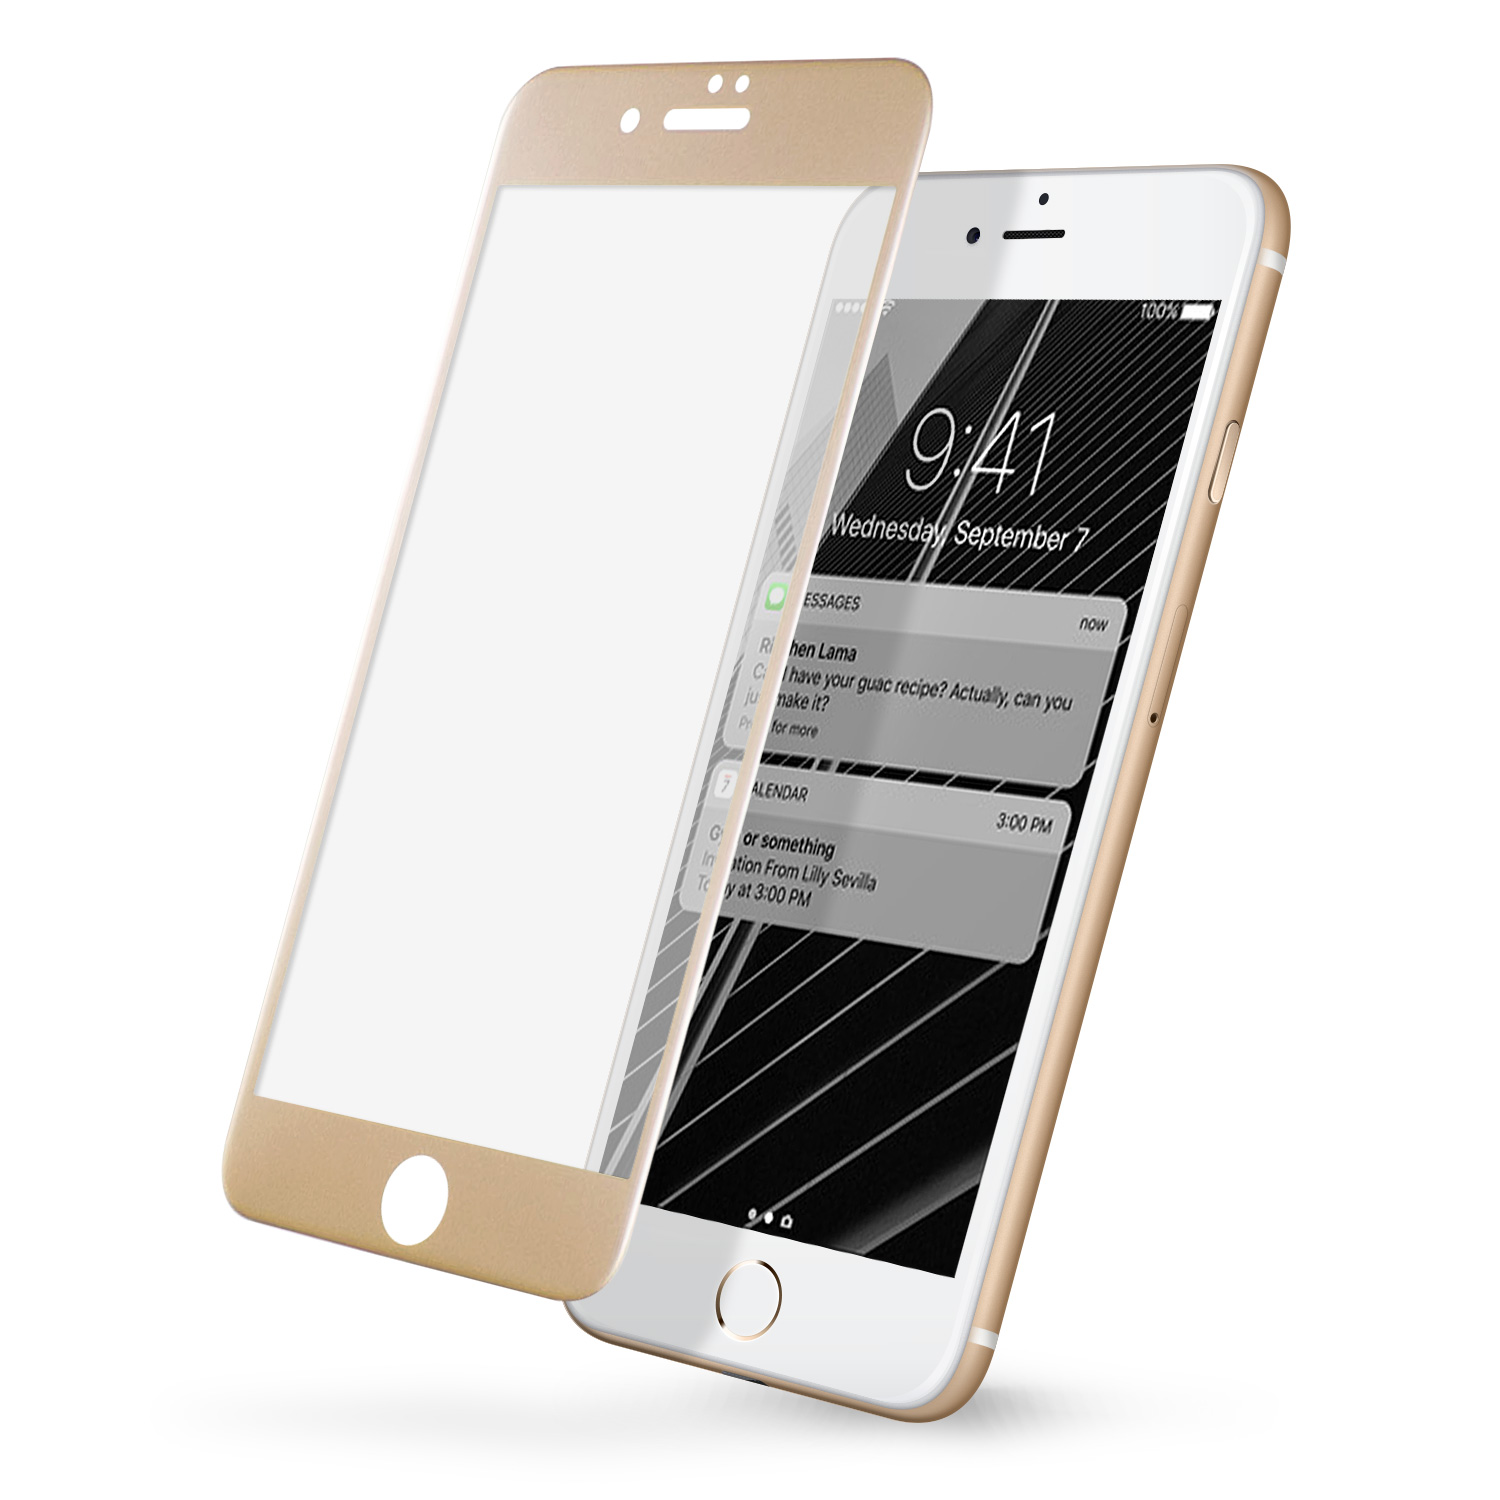 iPhone7/8 Plus 5.5吋專用 2.5D曲面滿版 9H防爆鋼化玻璃保護貼